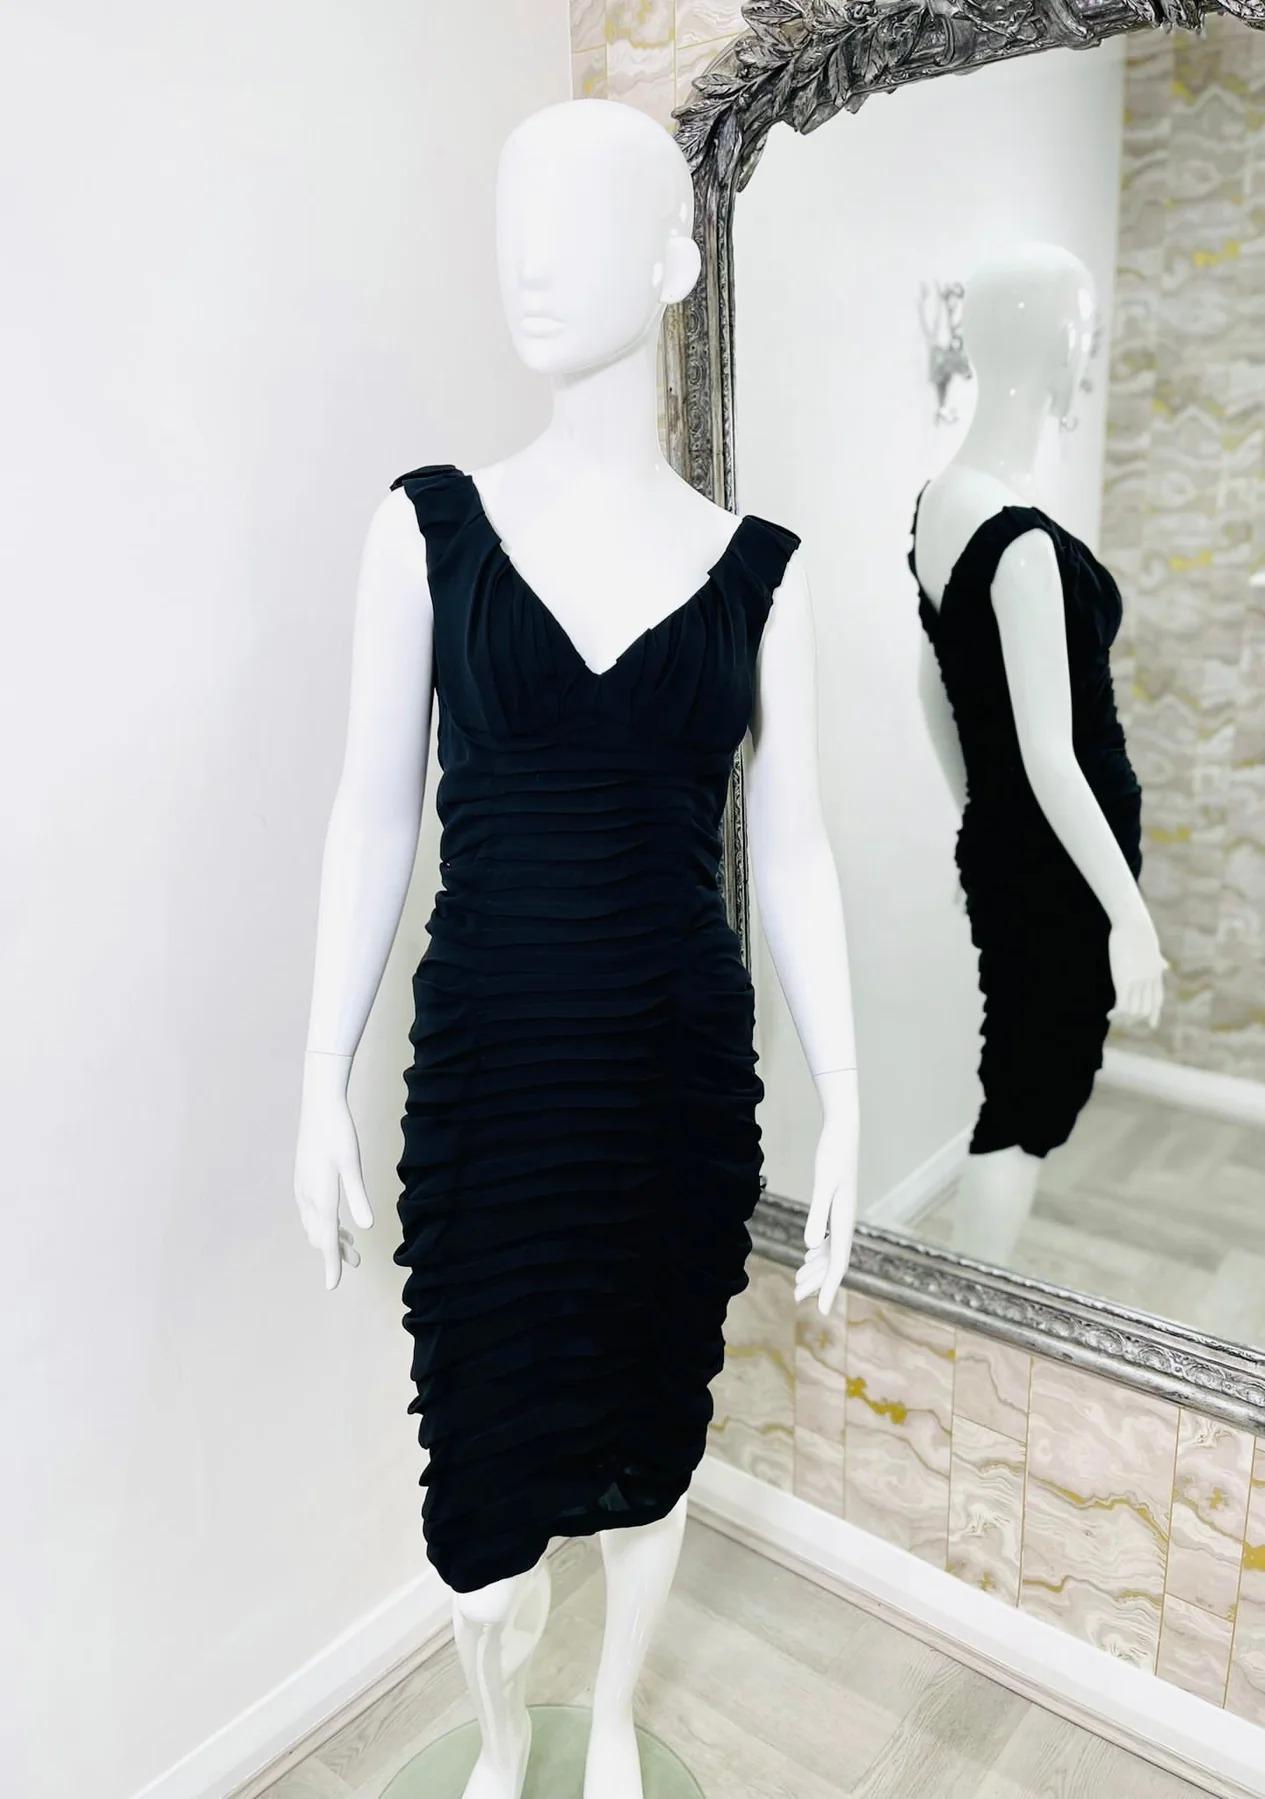 Yves Saint Laurent gerafftes Seidenkleid mit Rüschen

Schwarzes, ärmelloses Kleid mit durchgehenden Rüschen.

Zusätzliche Informationen:
Größe - 38FR
Zusammensetzung- Seide
Zustand - Sehr gut